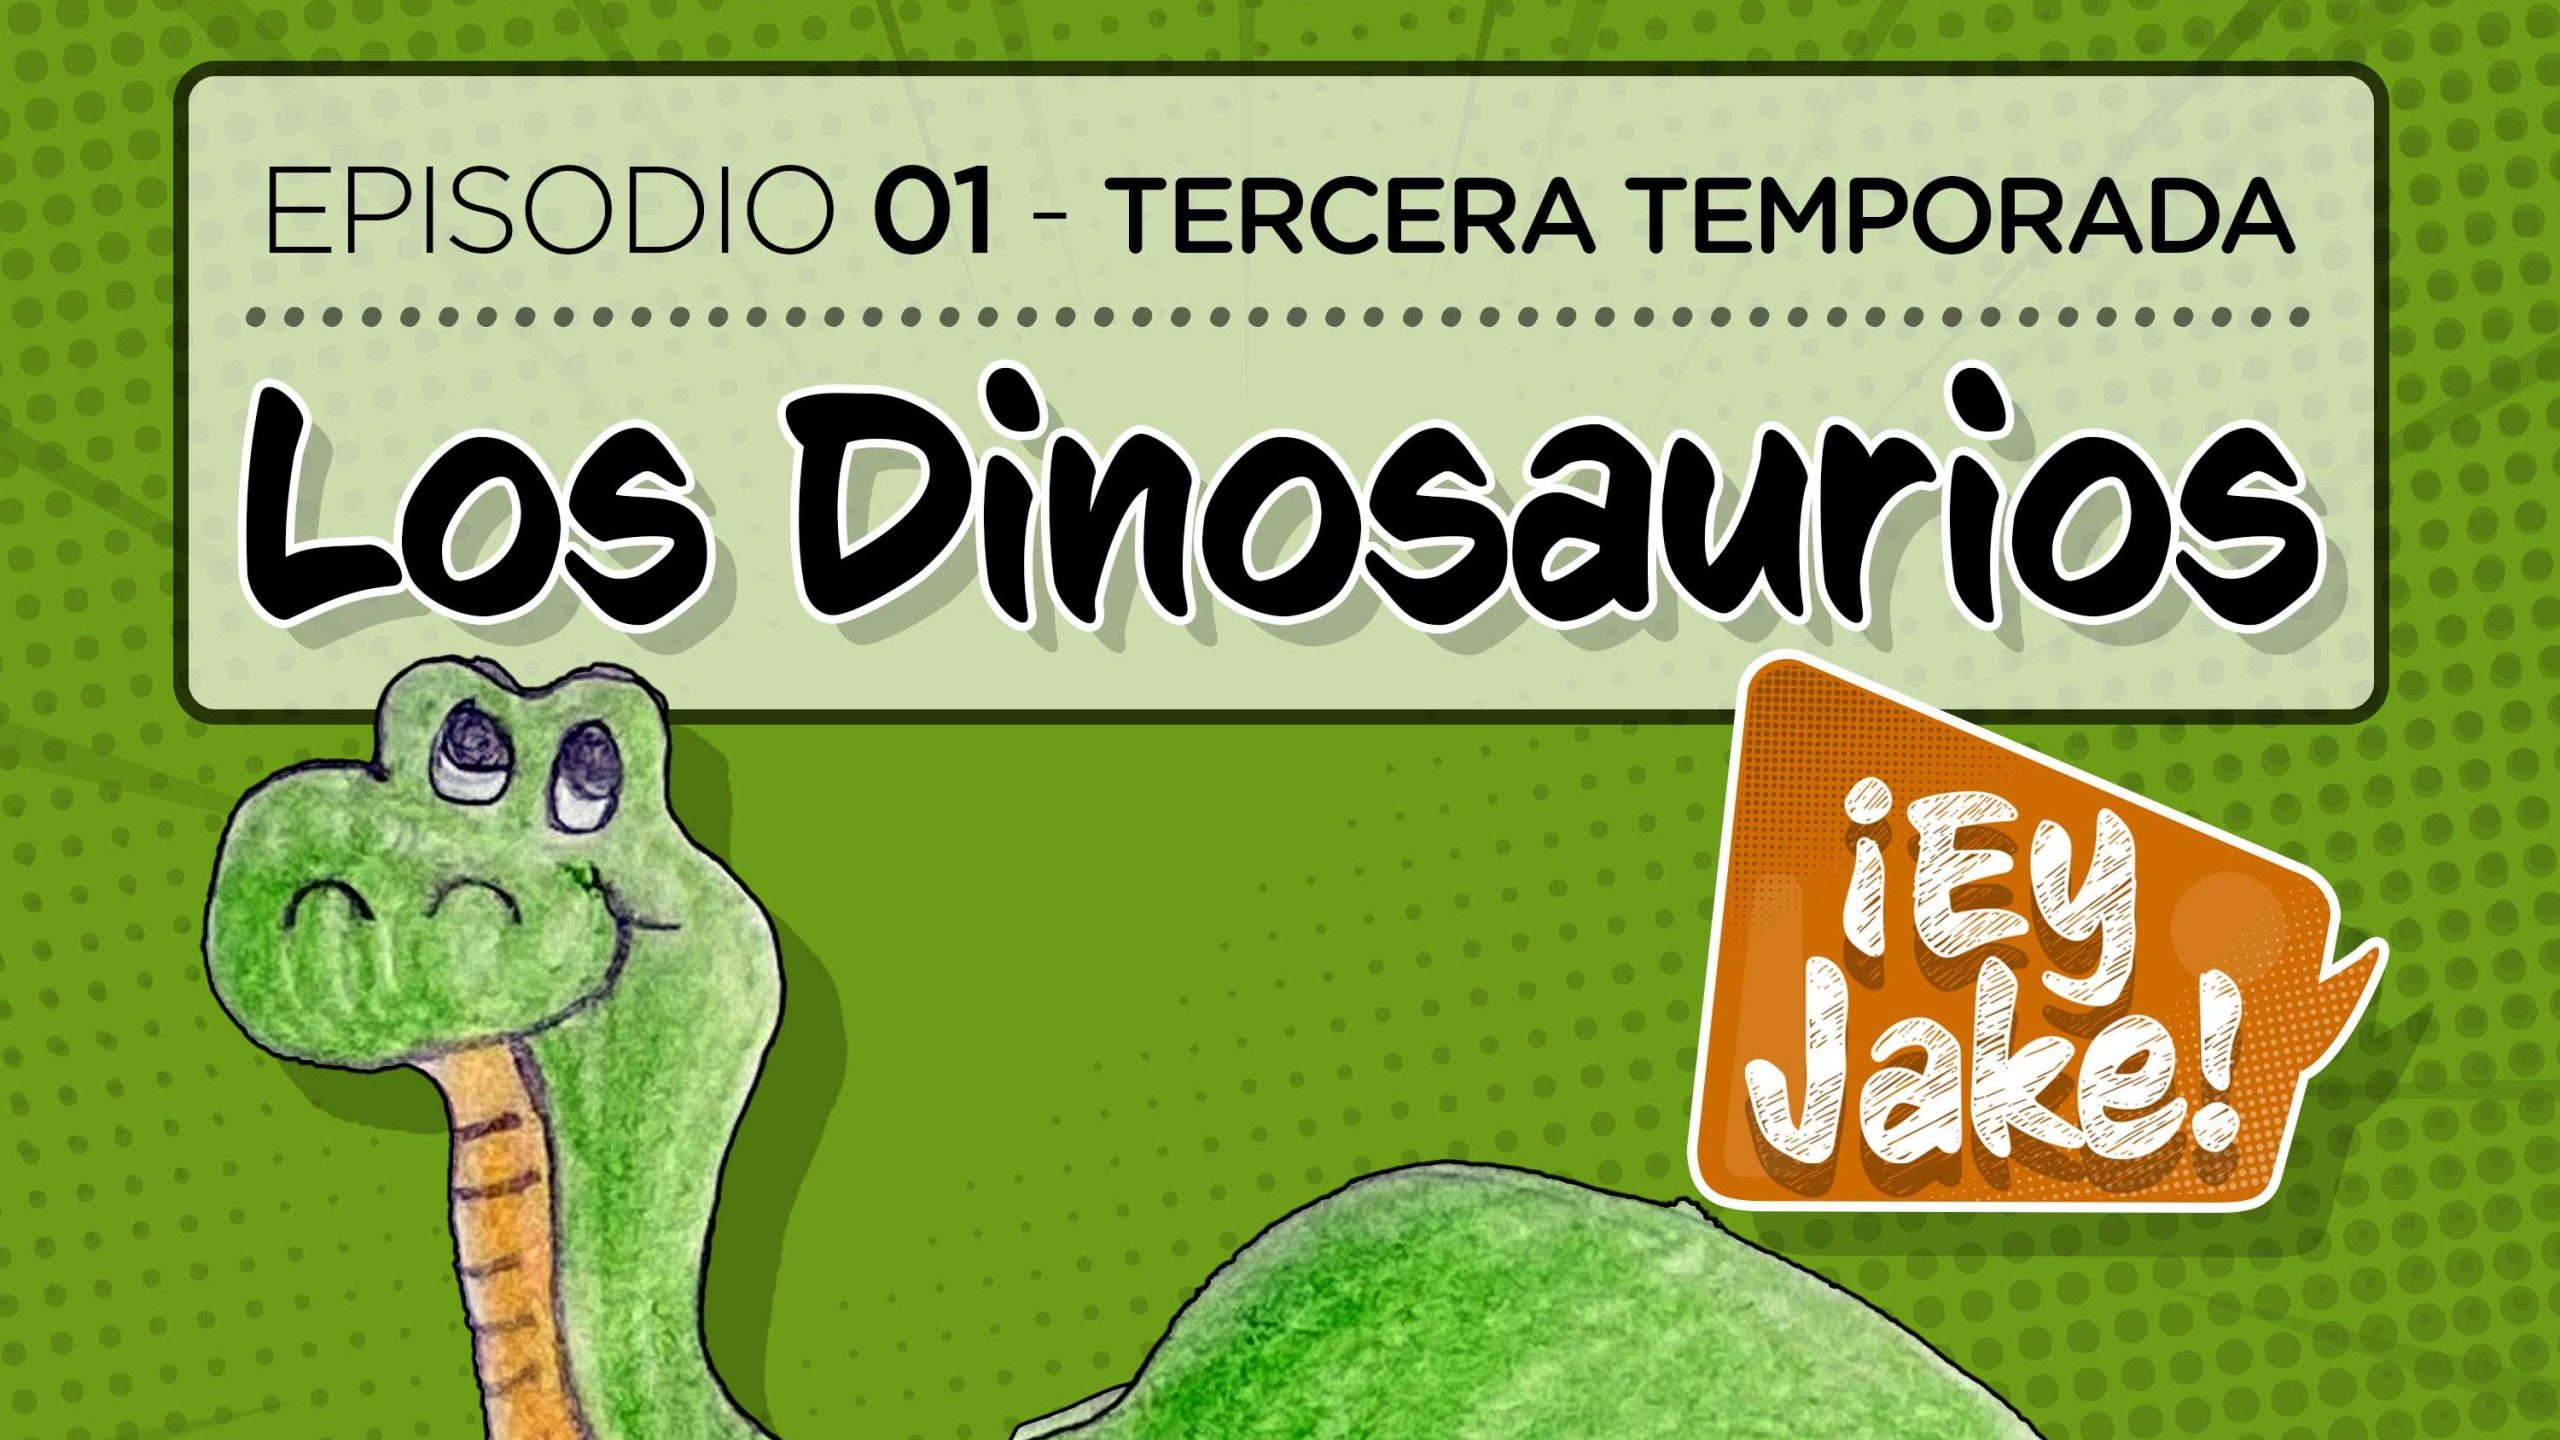 Los Dinosaurios - Episodio 01 - Tercera temporada - ¡Ey Jake!